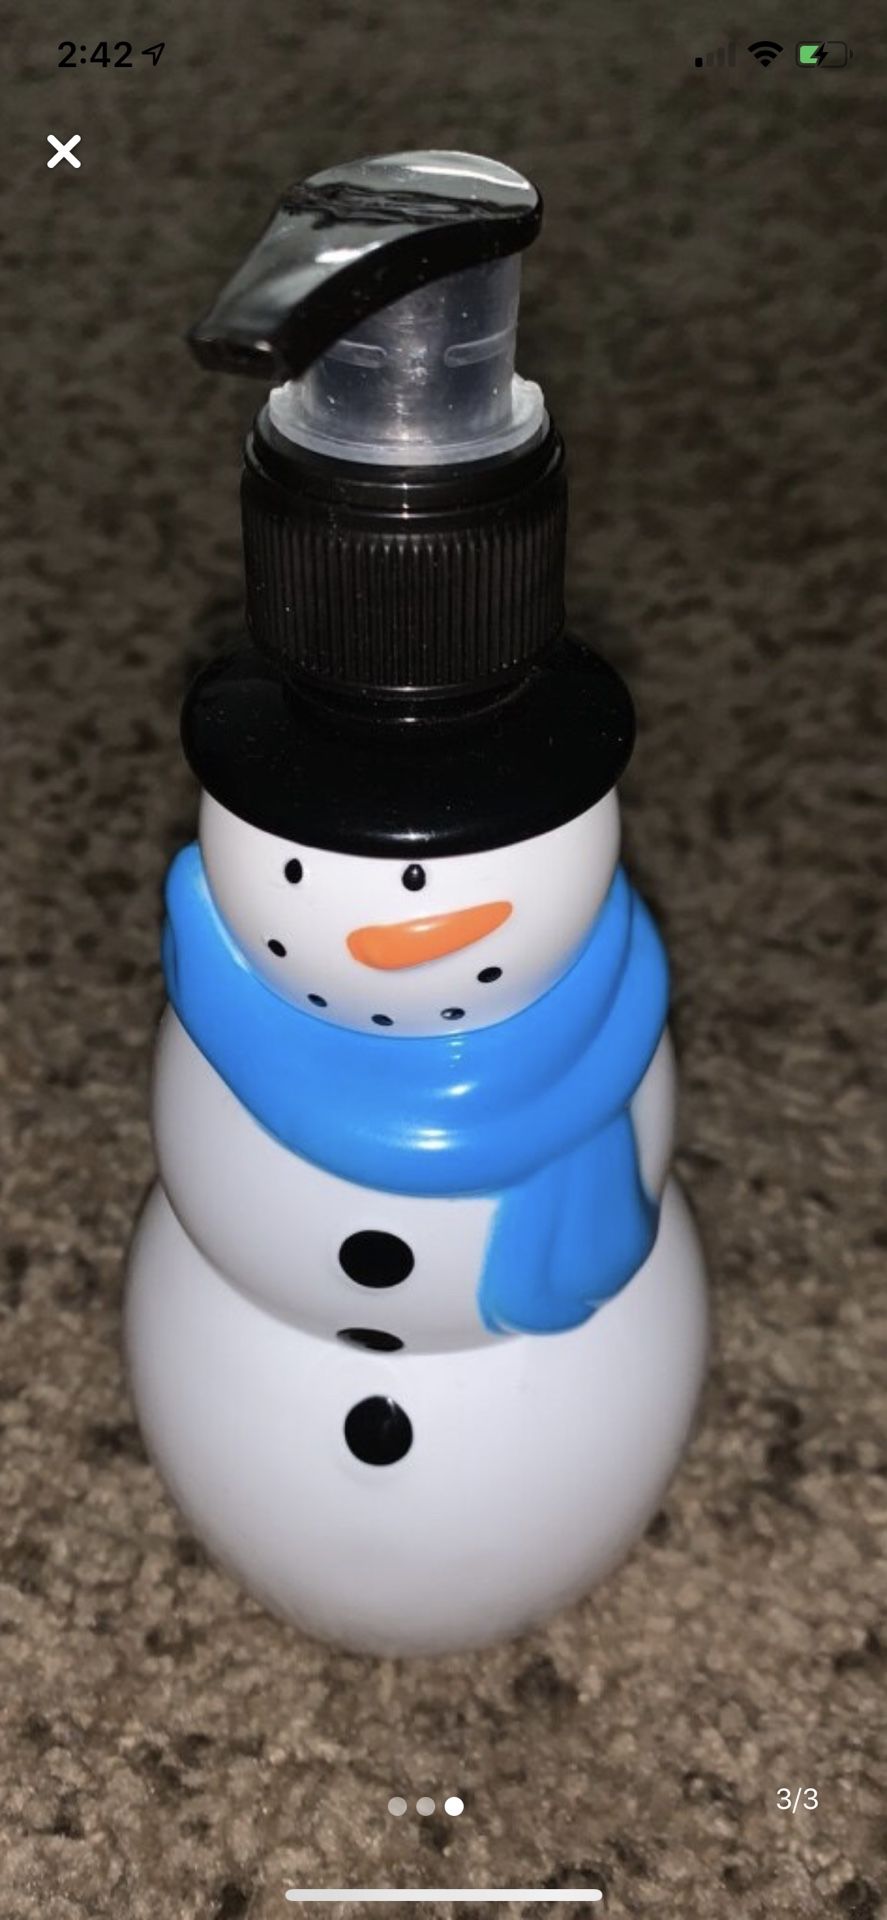 Snowman soap